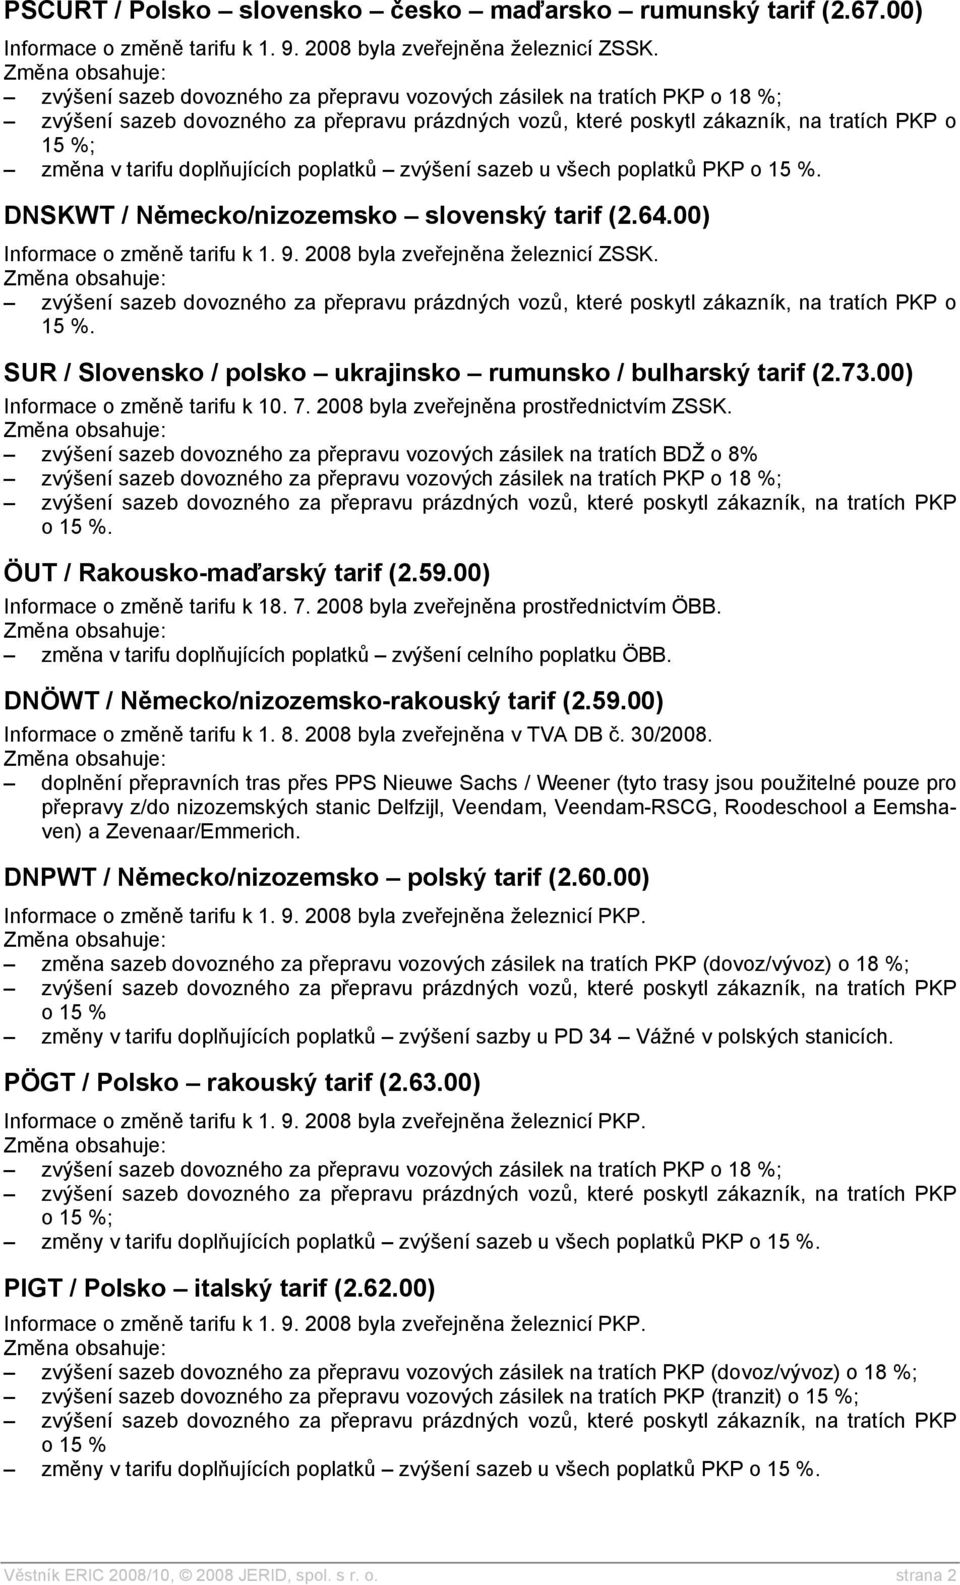 DNSKWT / Německo/nizozemsko slovenský tarif (2.64.00) Informace o změně tarifu k 1. 9. 2008 byla zveřejněna železnicí ZSSK. o 15 %. SUR / Slovensko / polsko ukrajinsko rumunsko / bulharský tarif (2.